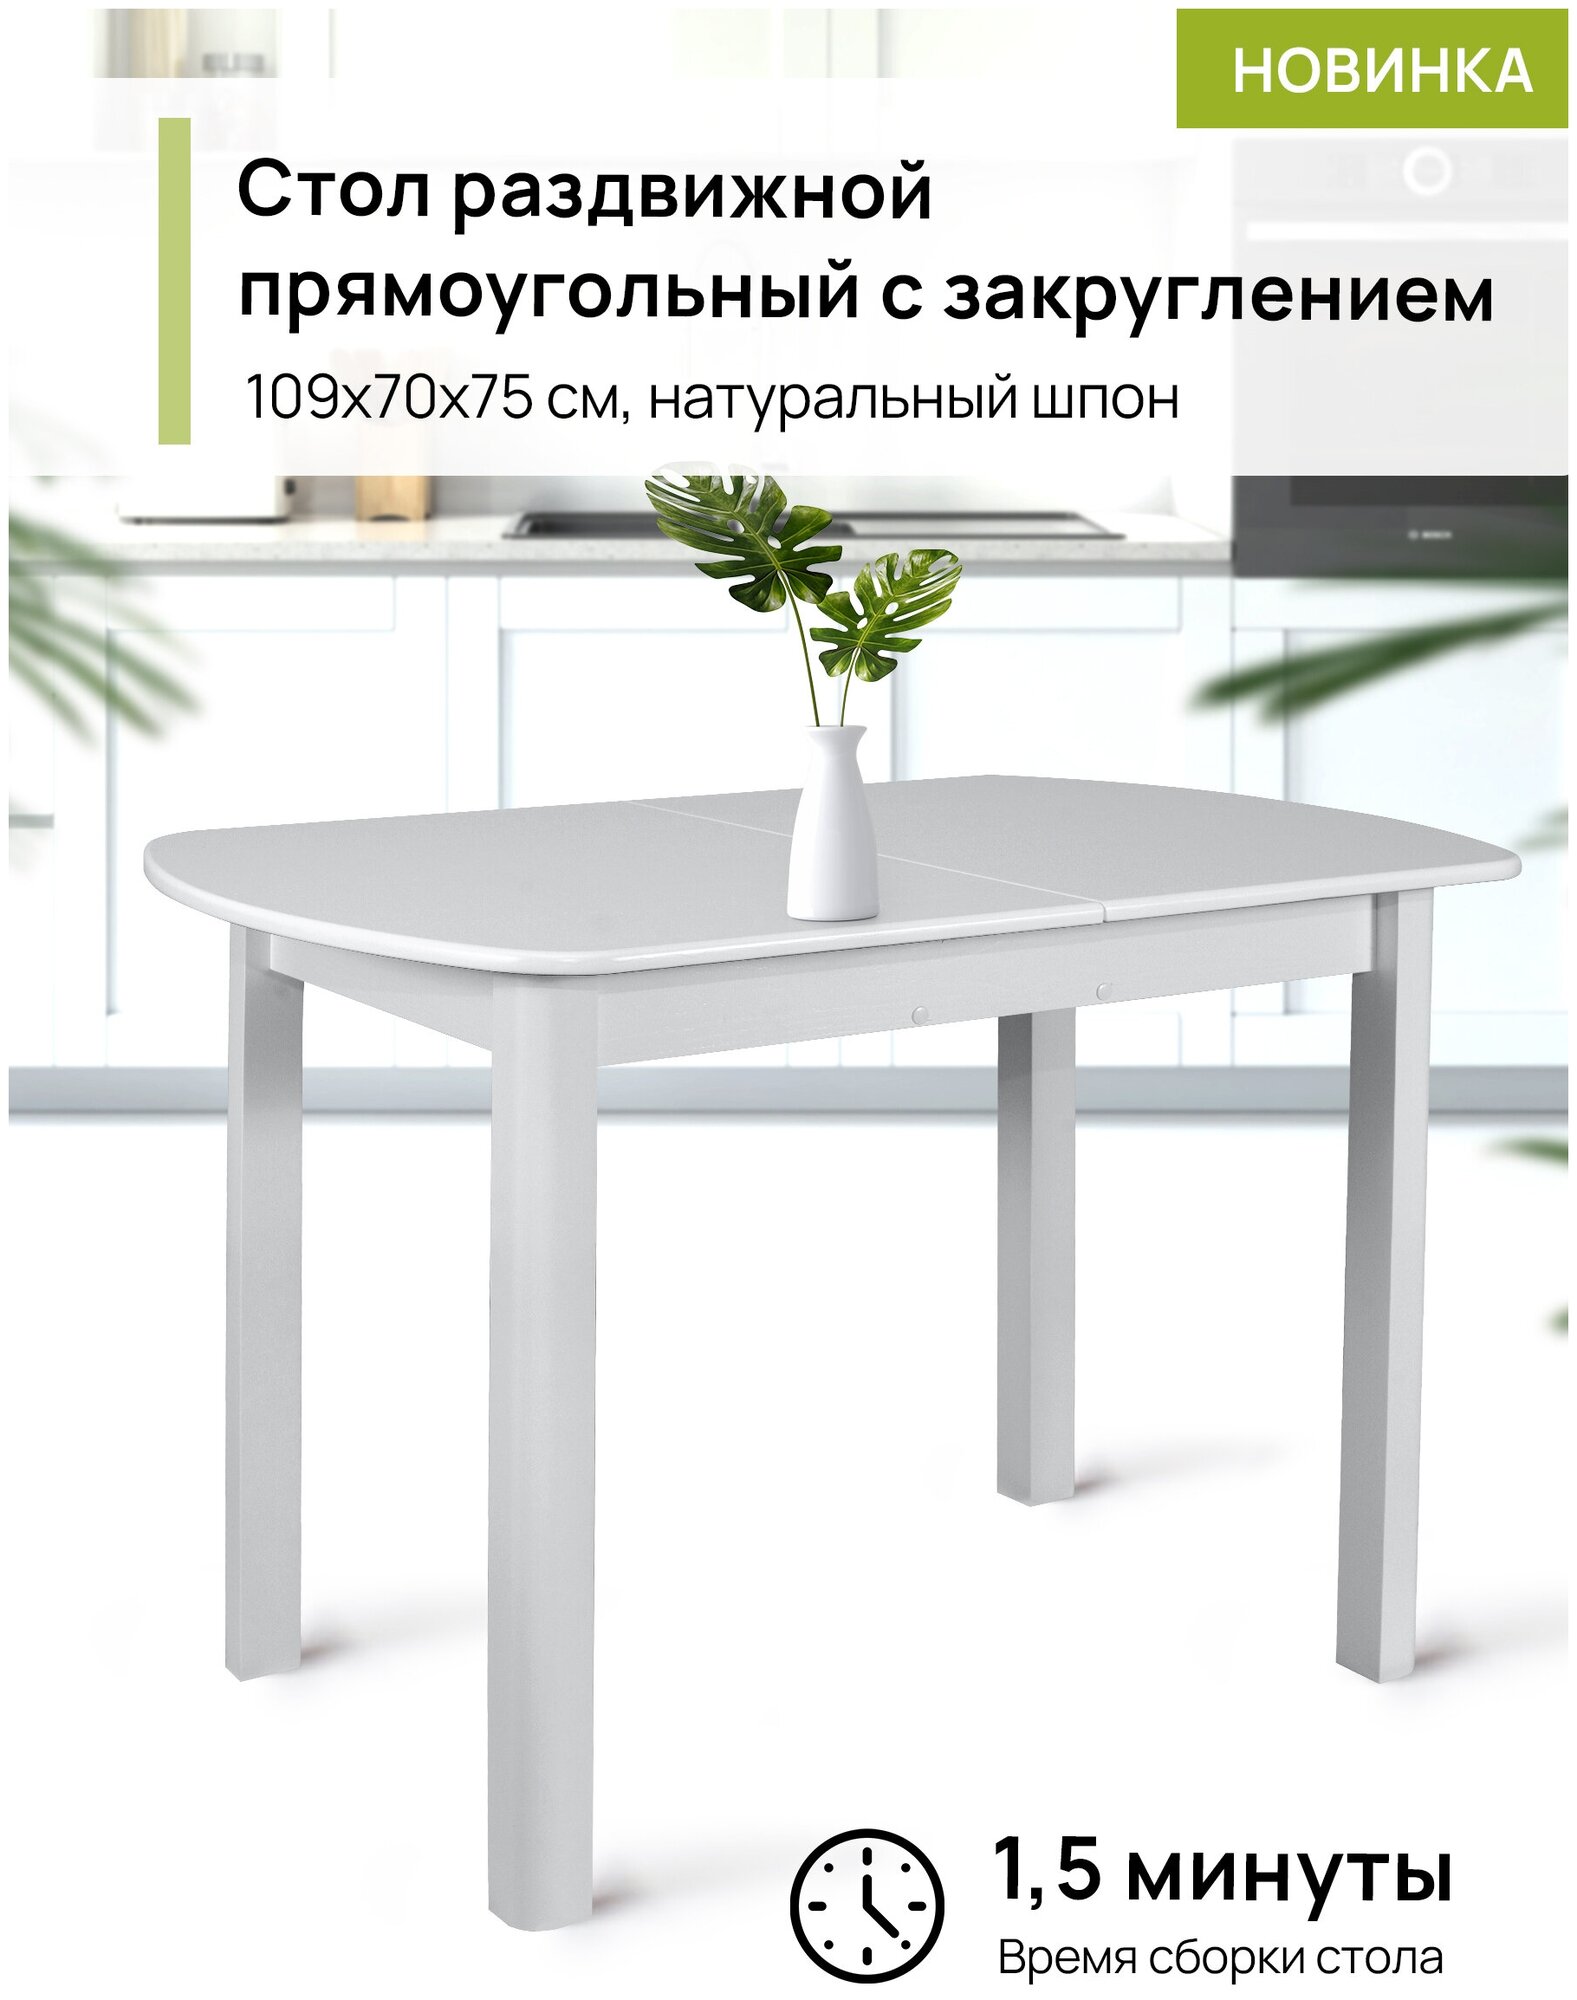 Кухонный раздвижной прямоугольный стол